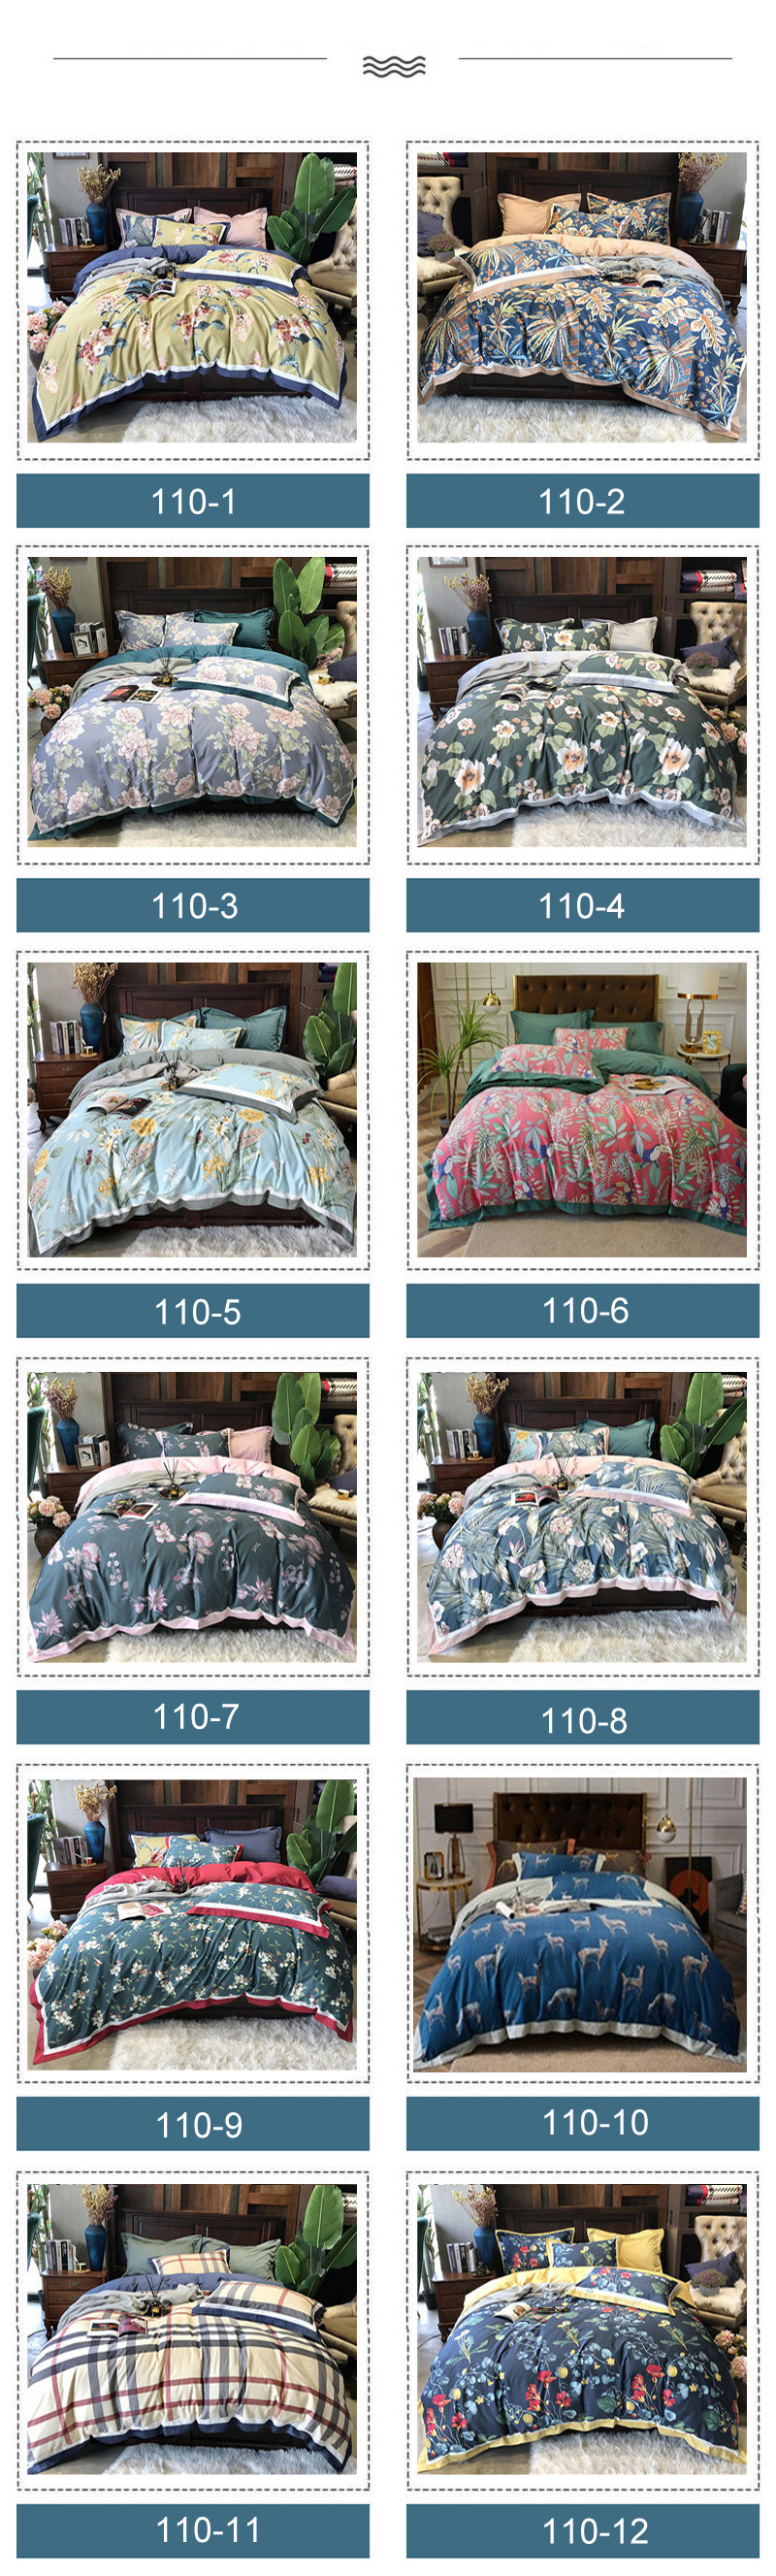 For 3PCS Full Bed Sheet Set Luxury